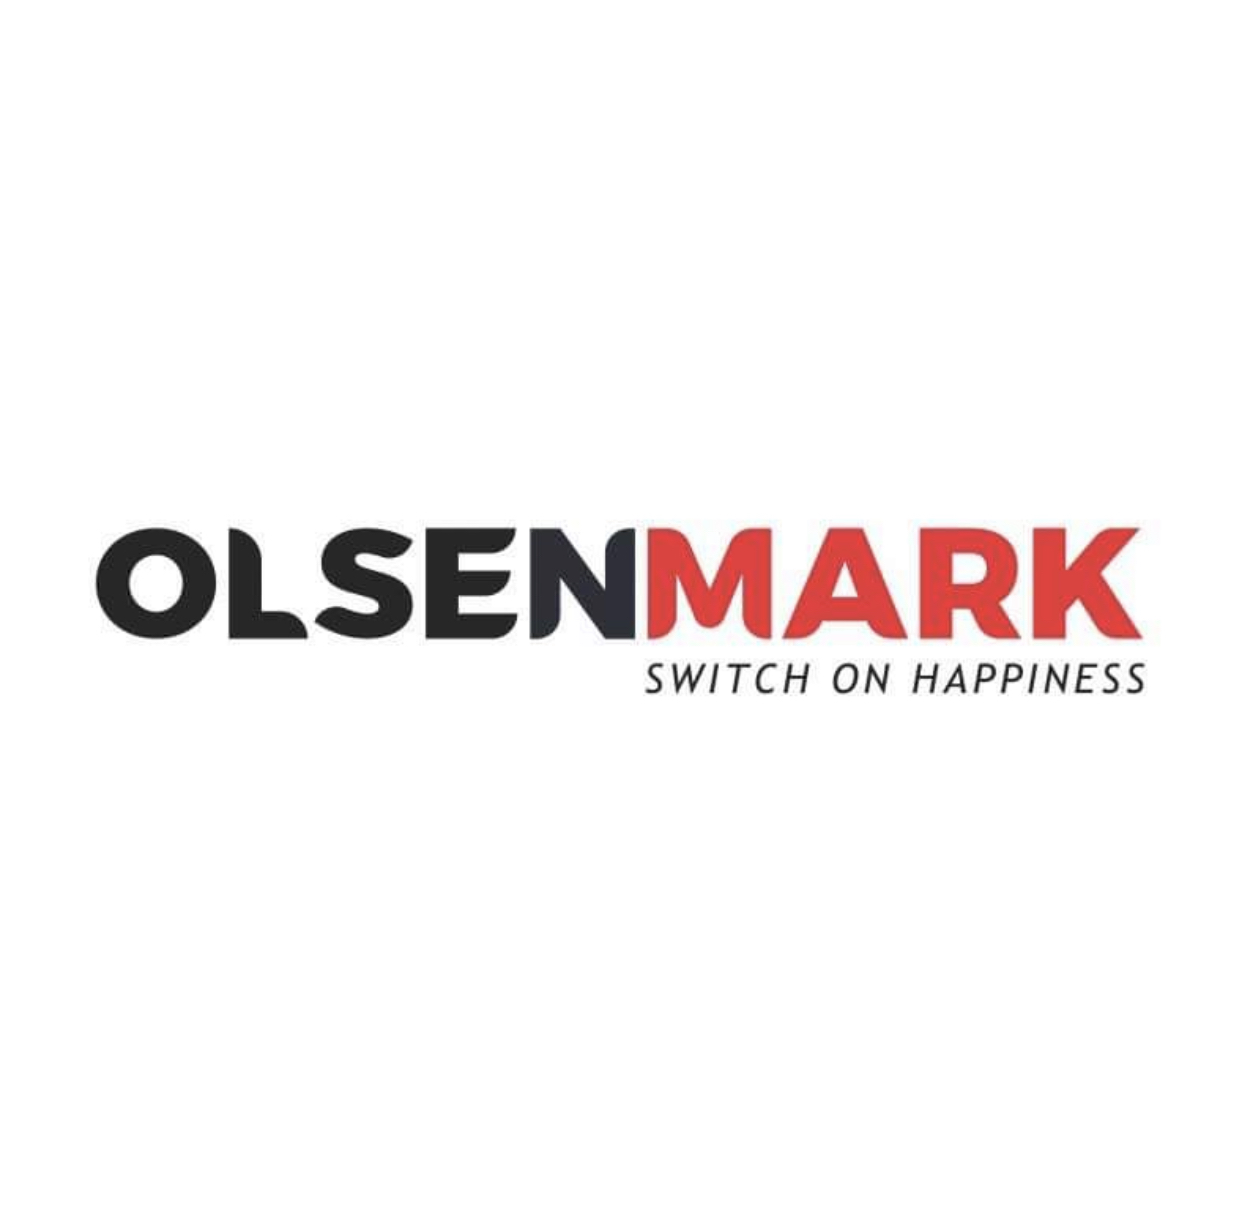 Olsenmark